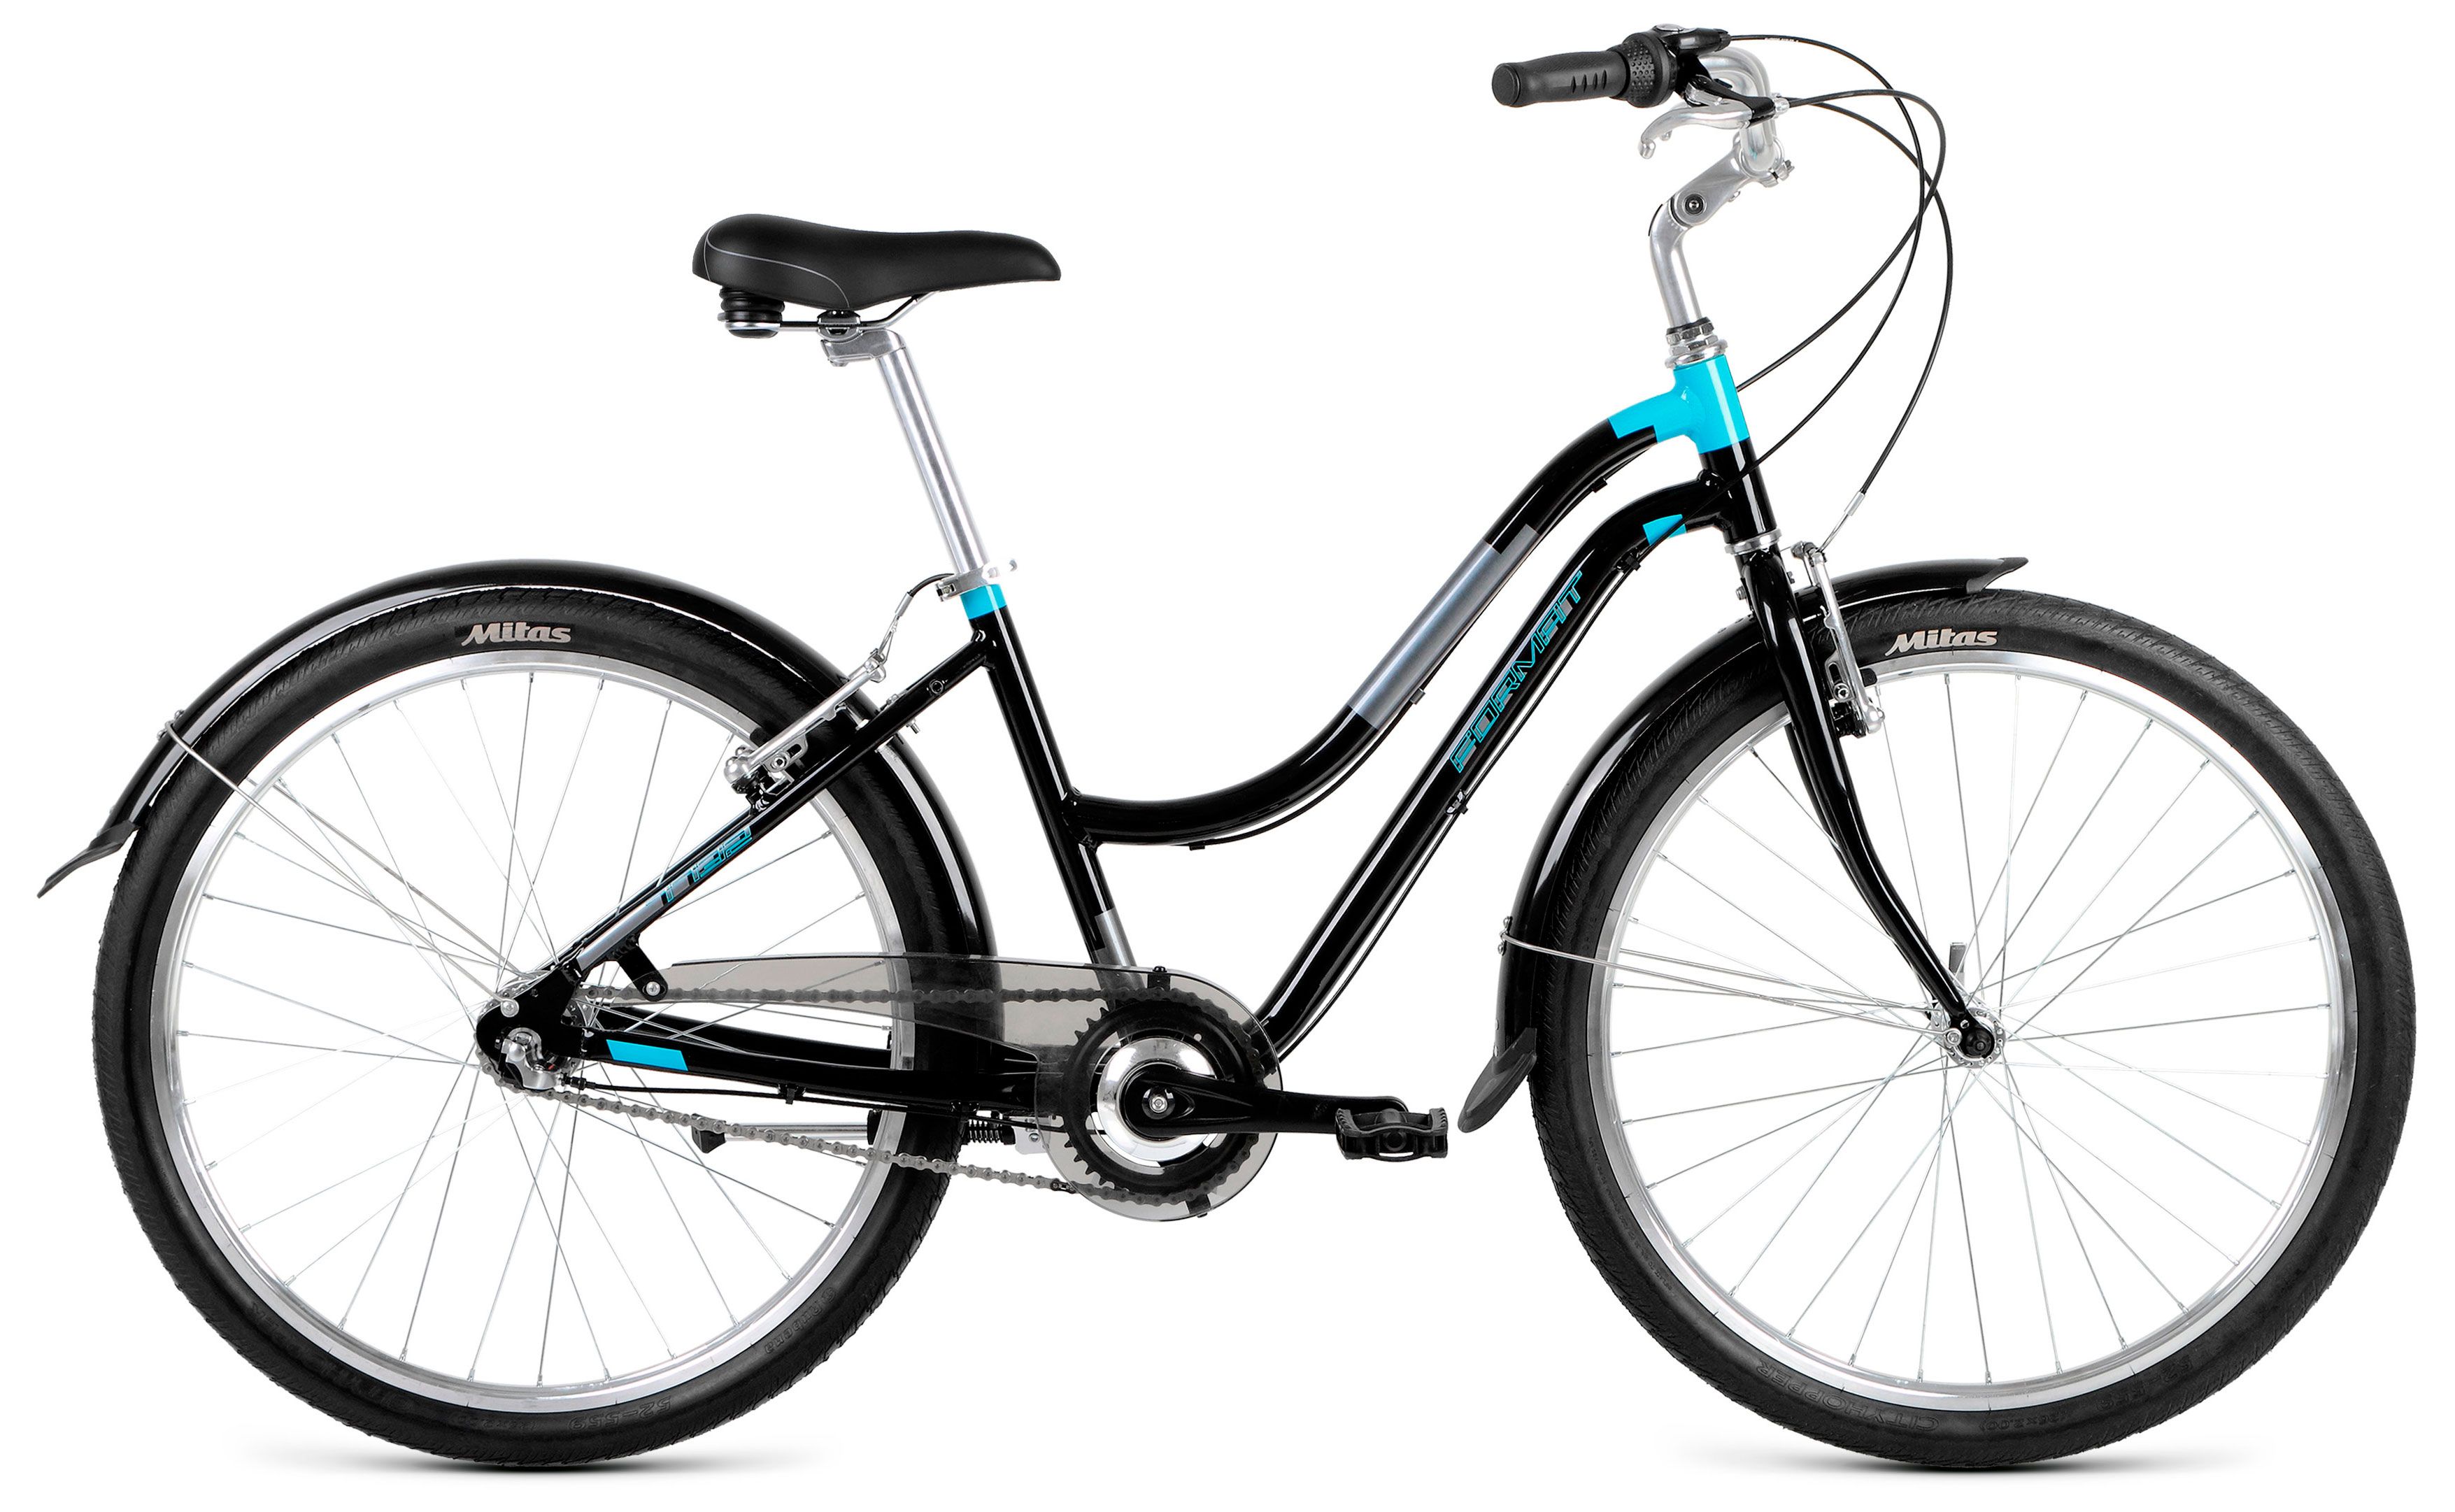  Велосипед Format 7732 2018